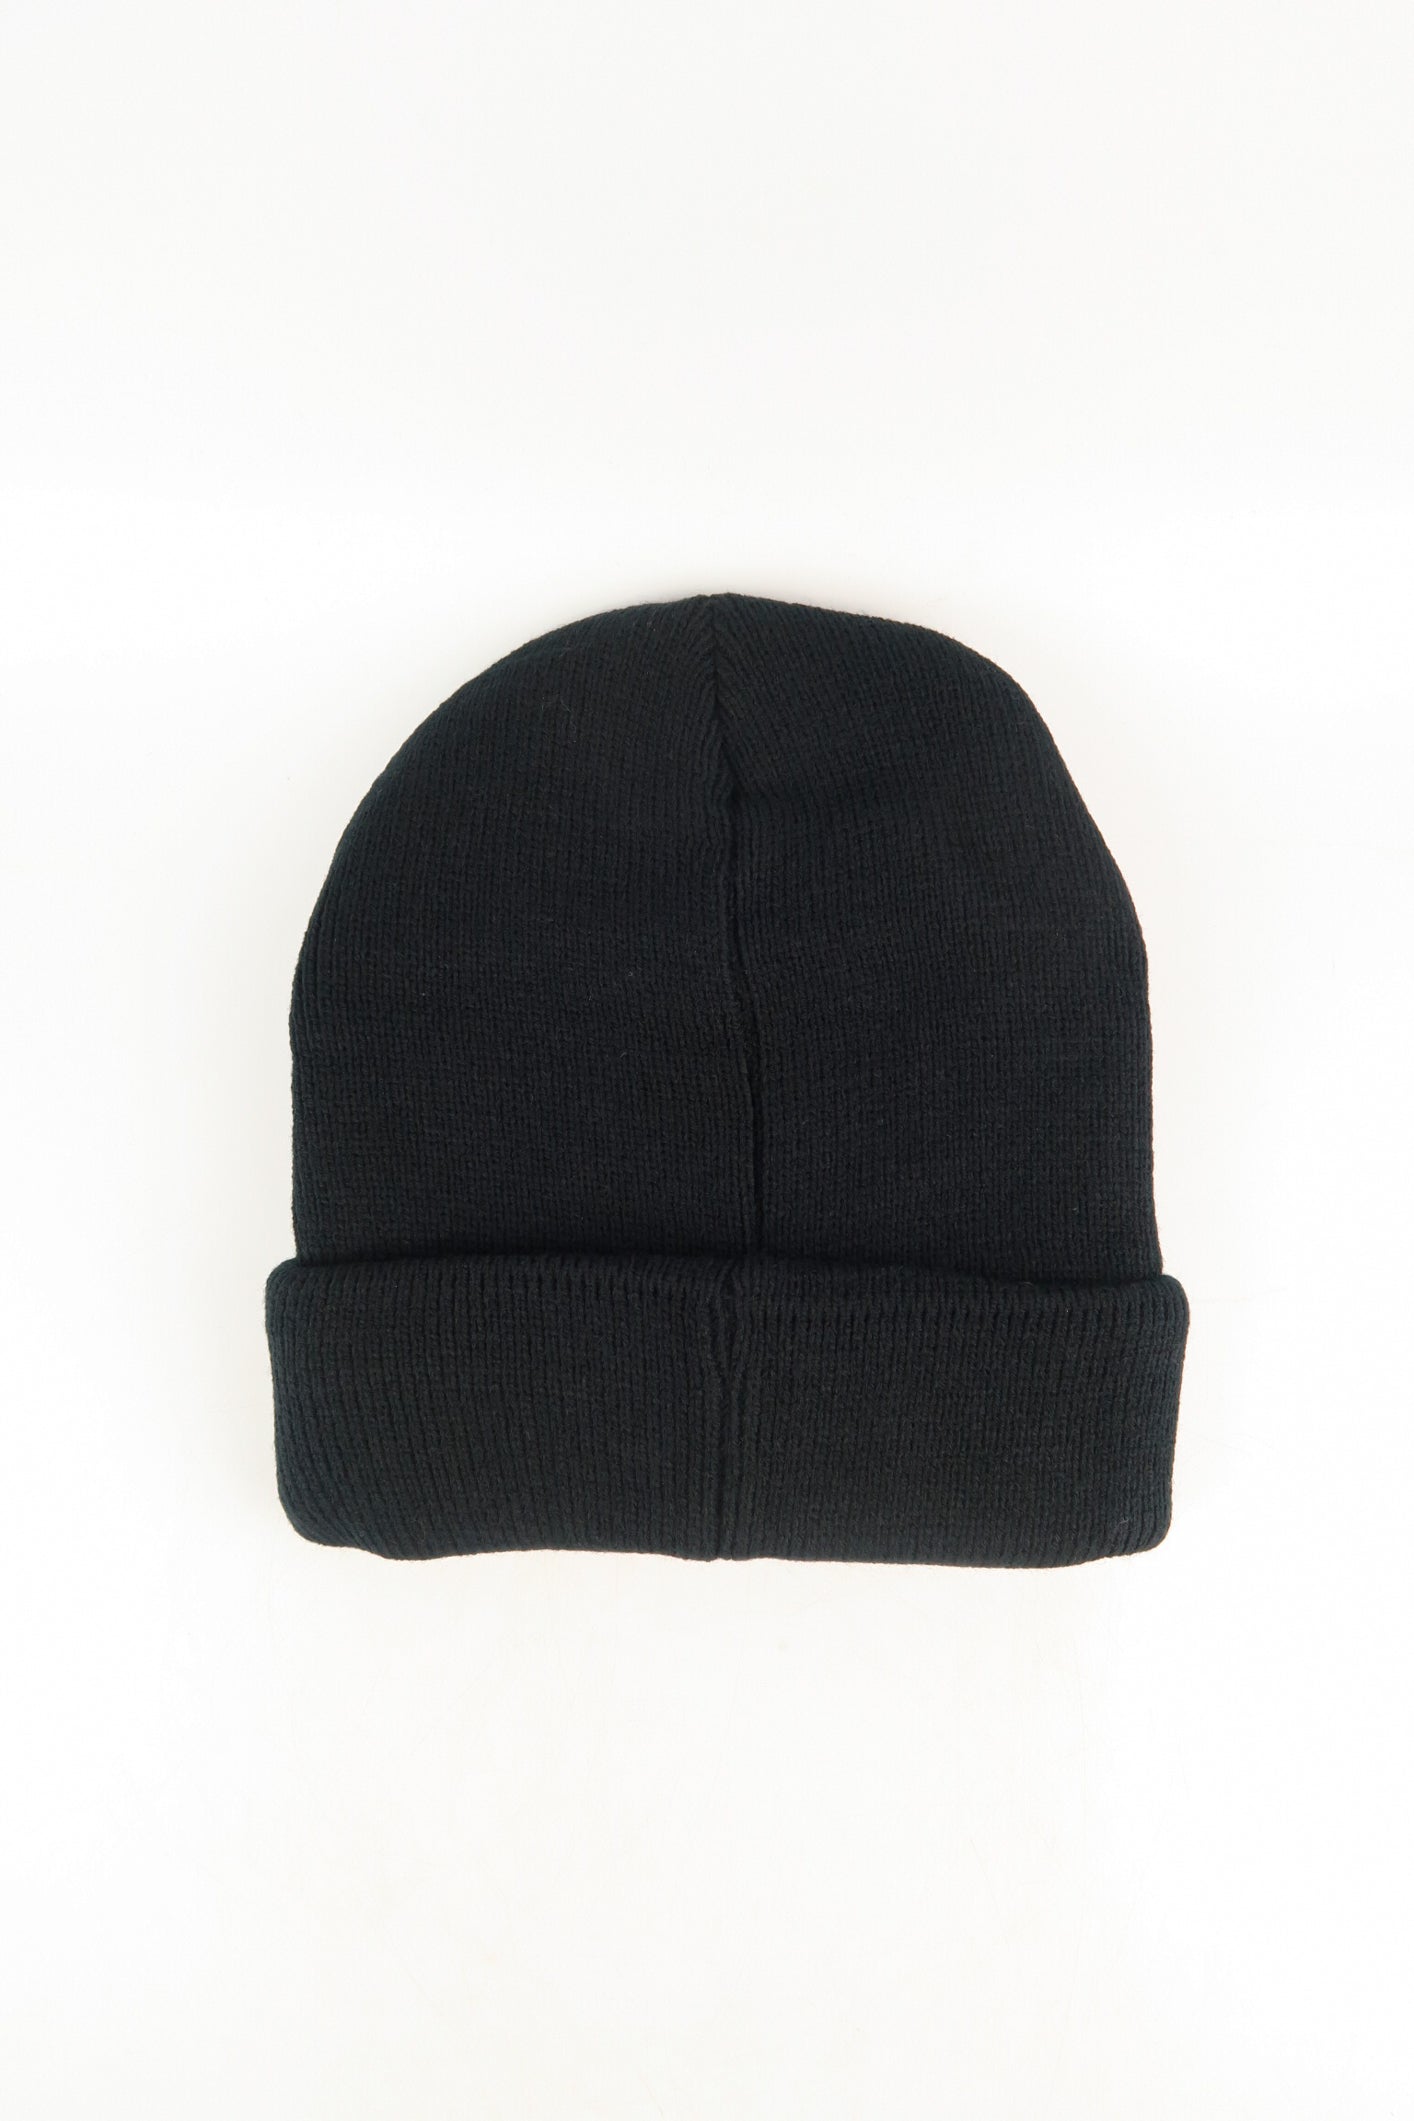 หมวกไหมพรมถัก พับขอบ สำหรับกันหนาว - Unisex Cable Knit Fleece Lining Knit Beanie Ski Hat